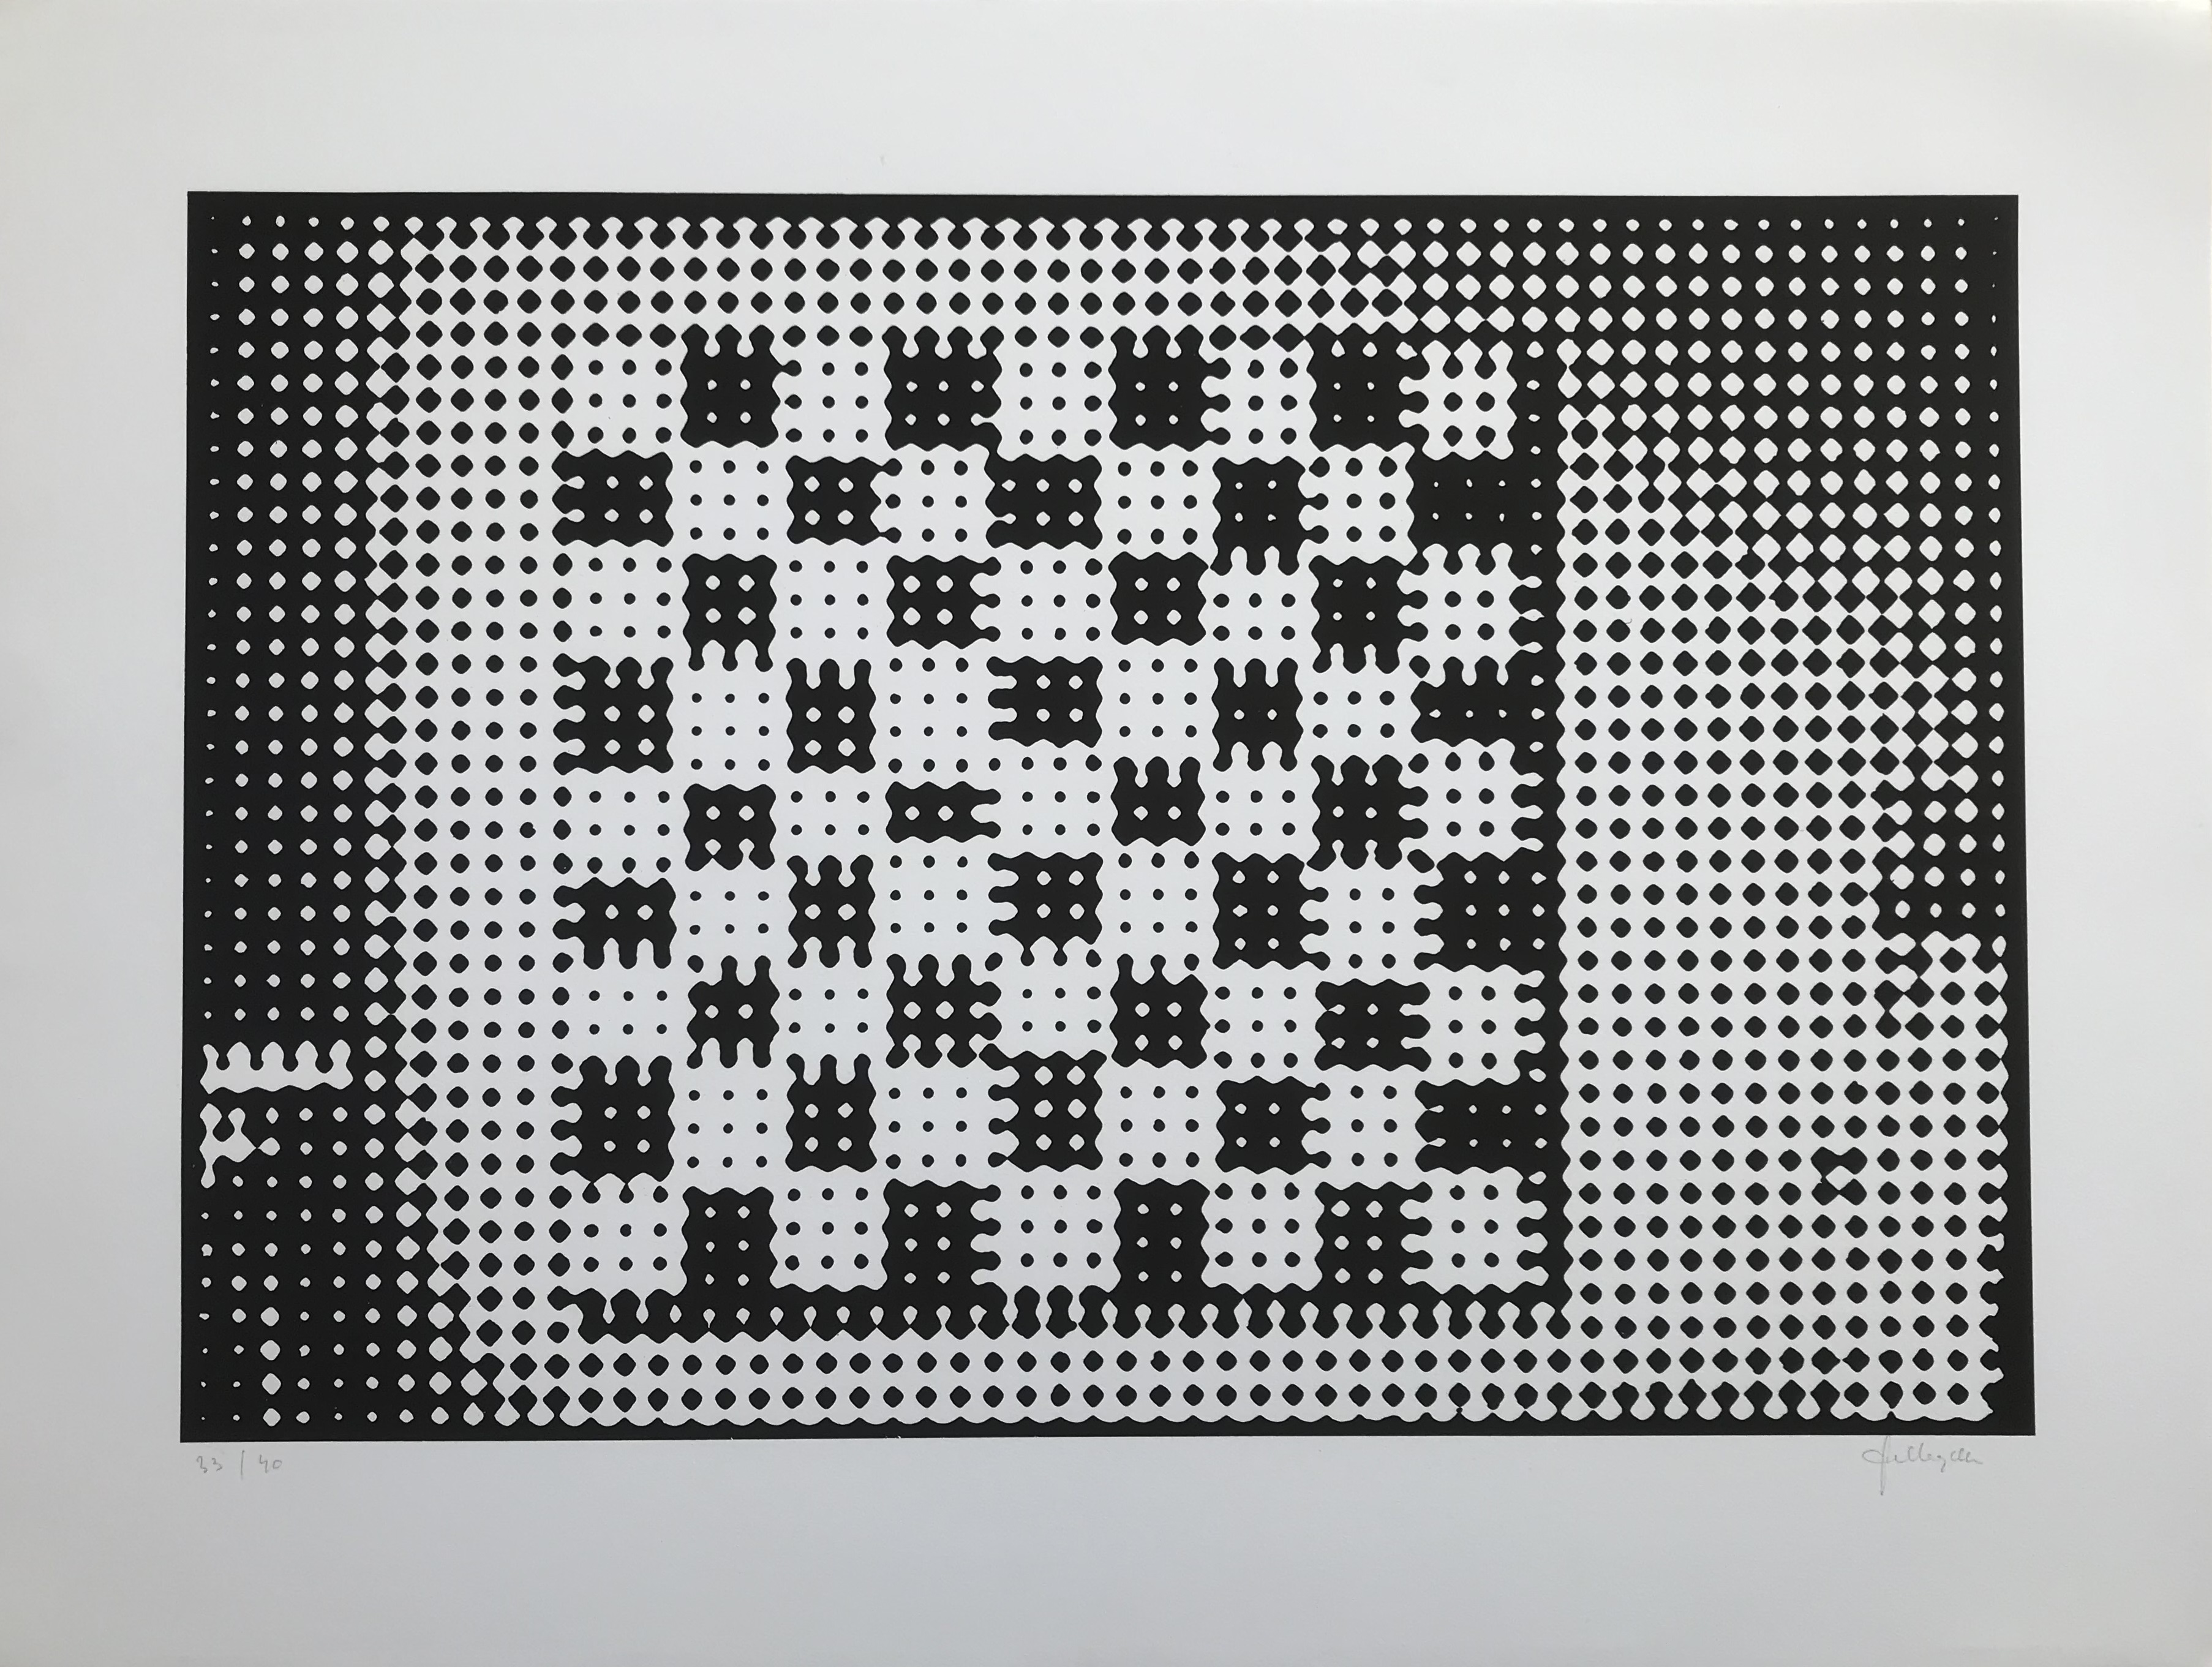 Checkerboard Grid / Schaakbordraster (1988)